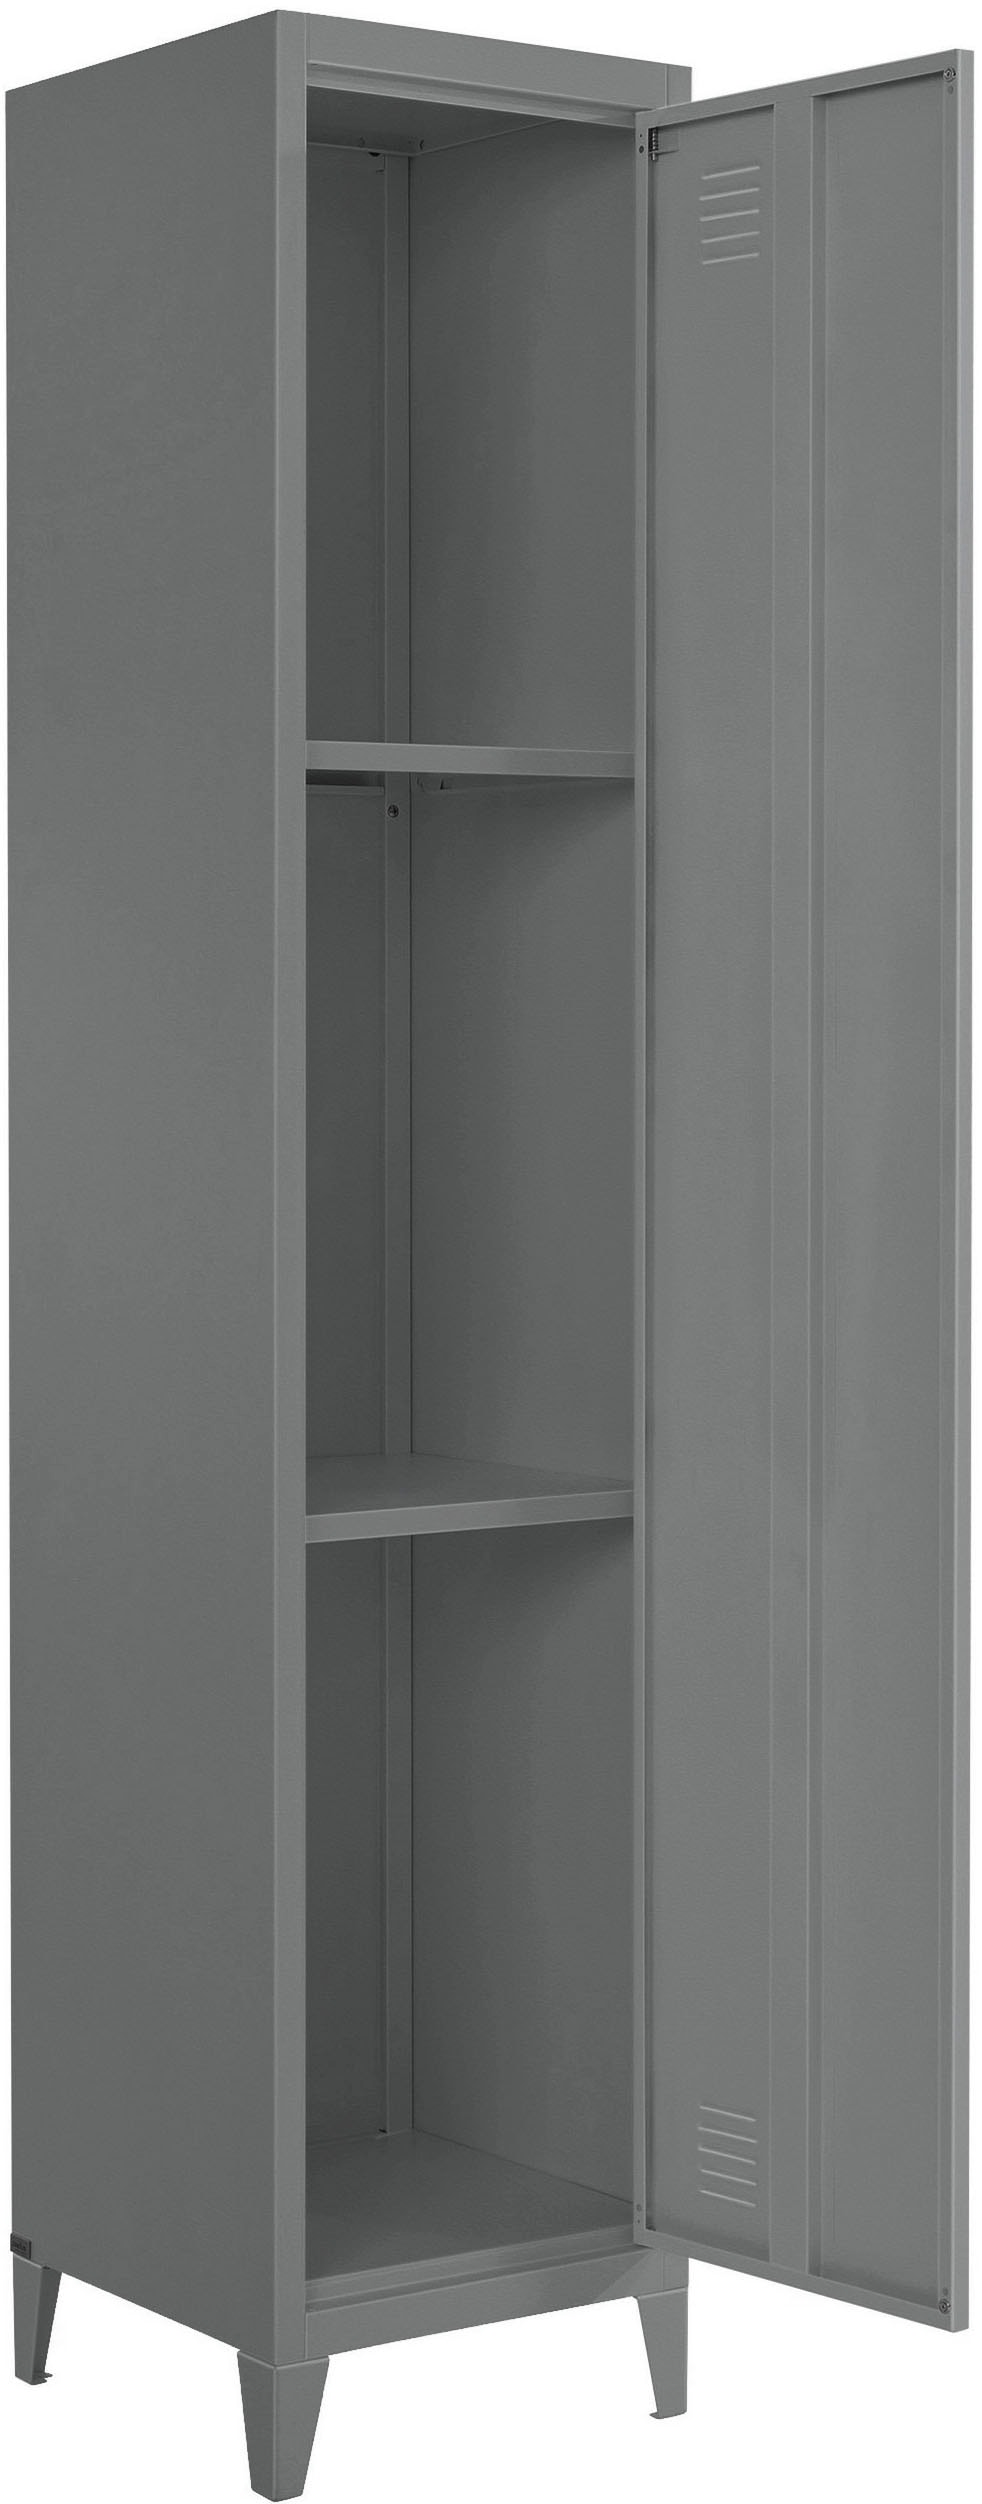 andas Hochschrank »Jensjorg«, Hochschrank aus Metall, 2 x Einlegeböden  hinter der Tür, Höhe 180 cm bequem kaufen